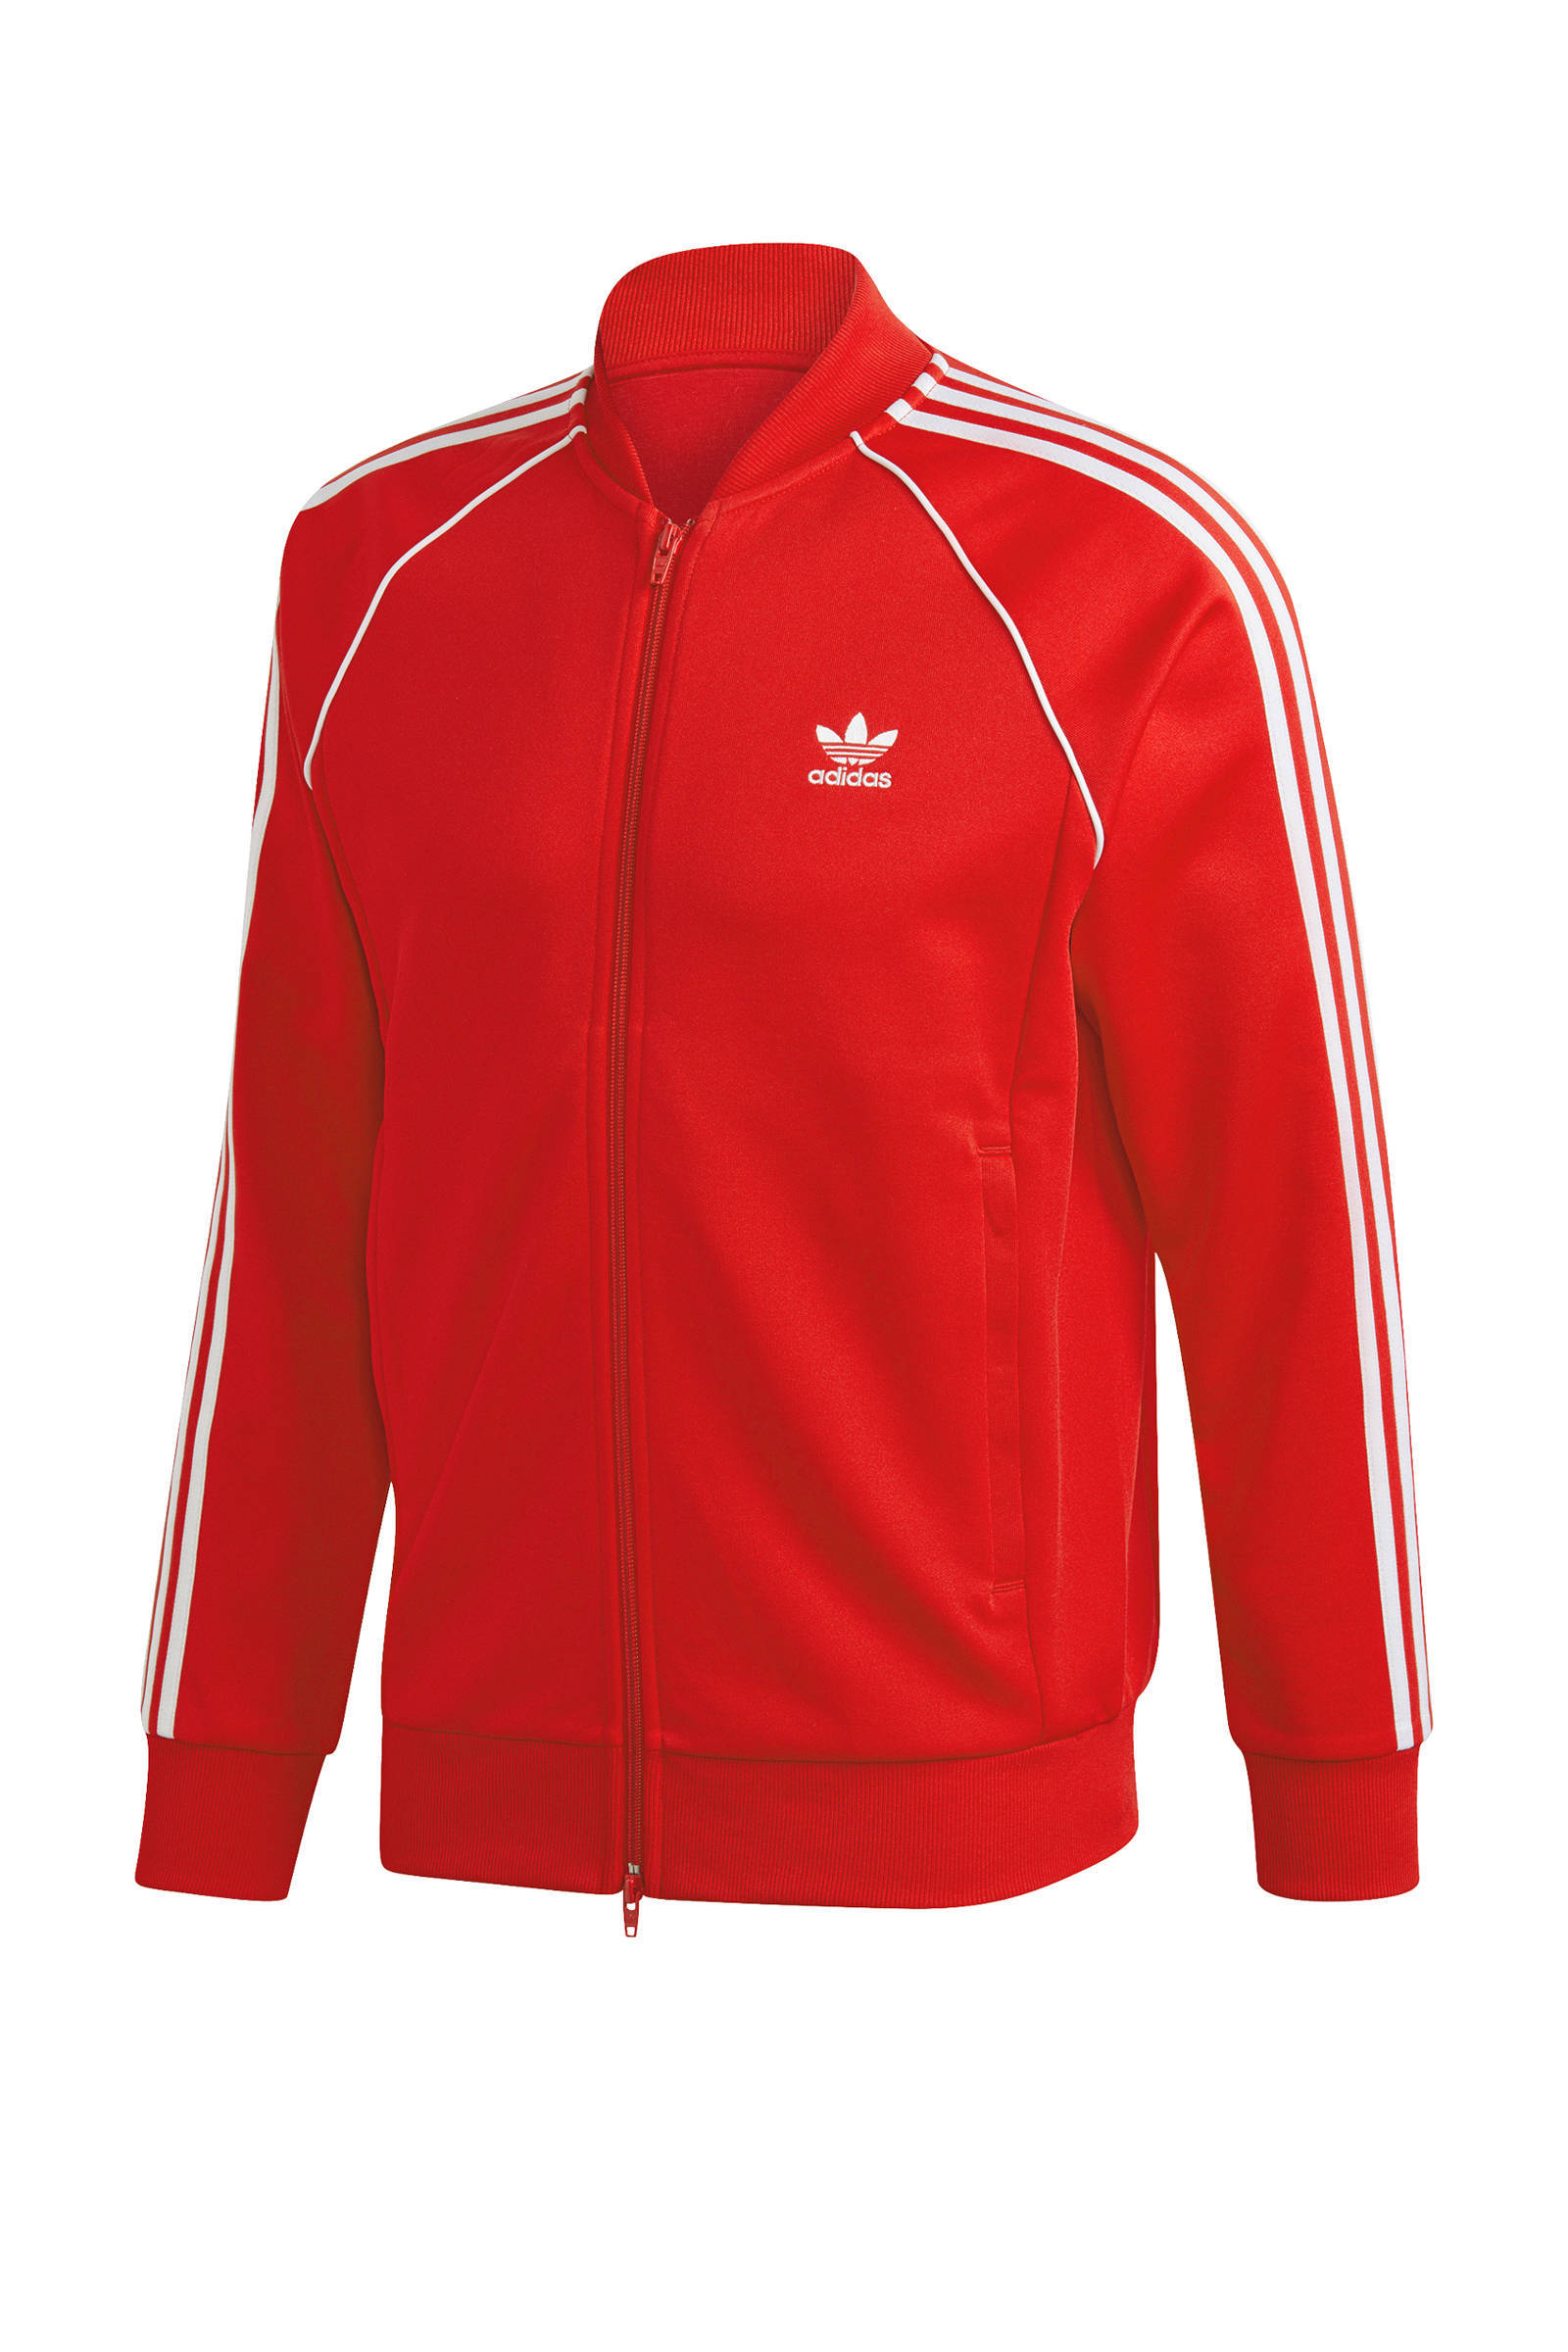 adidas Originals Superstar Adicolor vest roze/wit | wehkamp